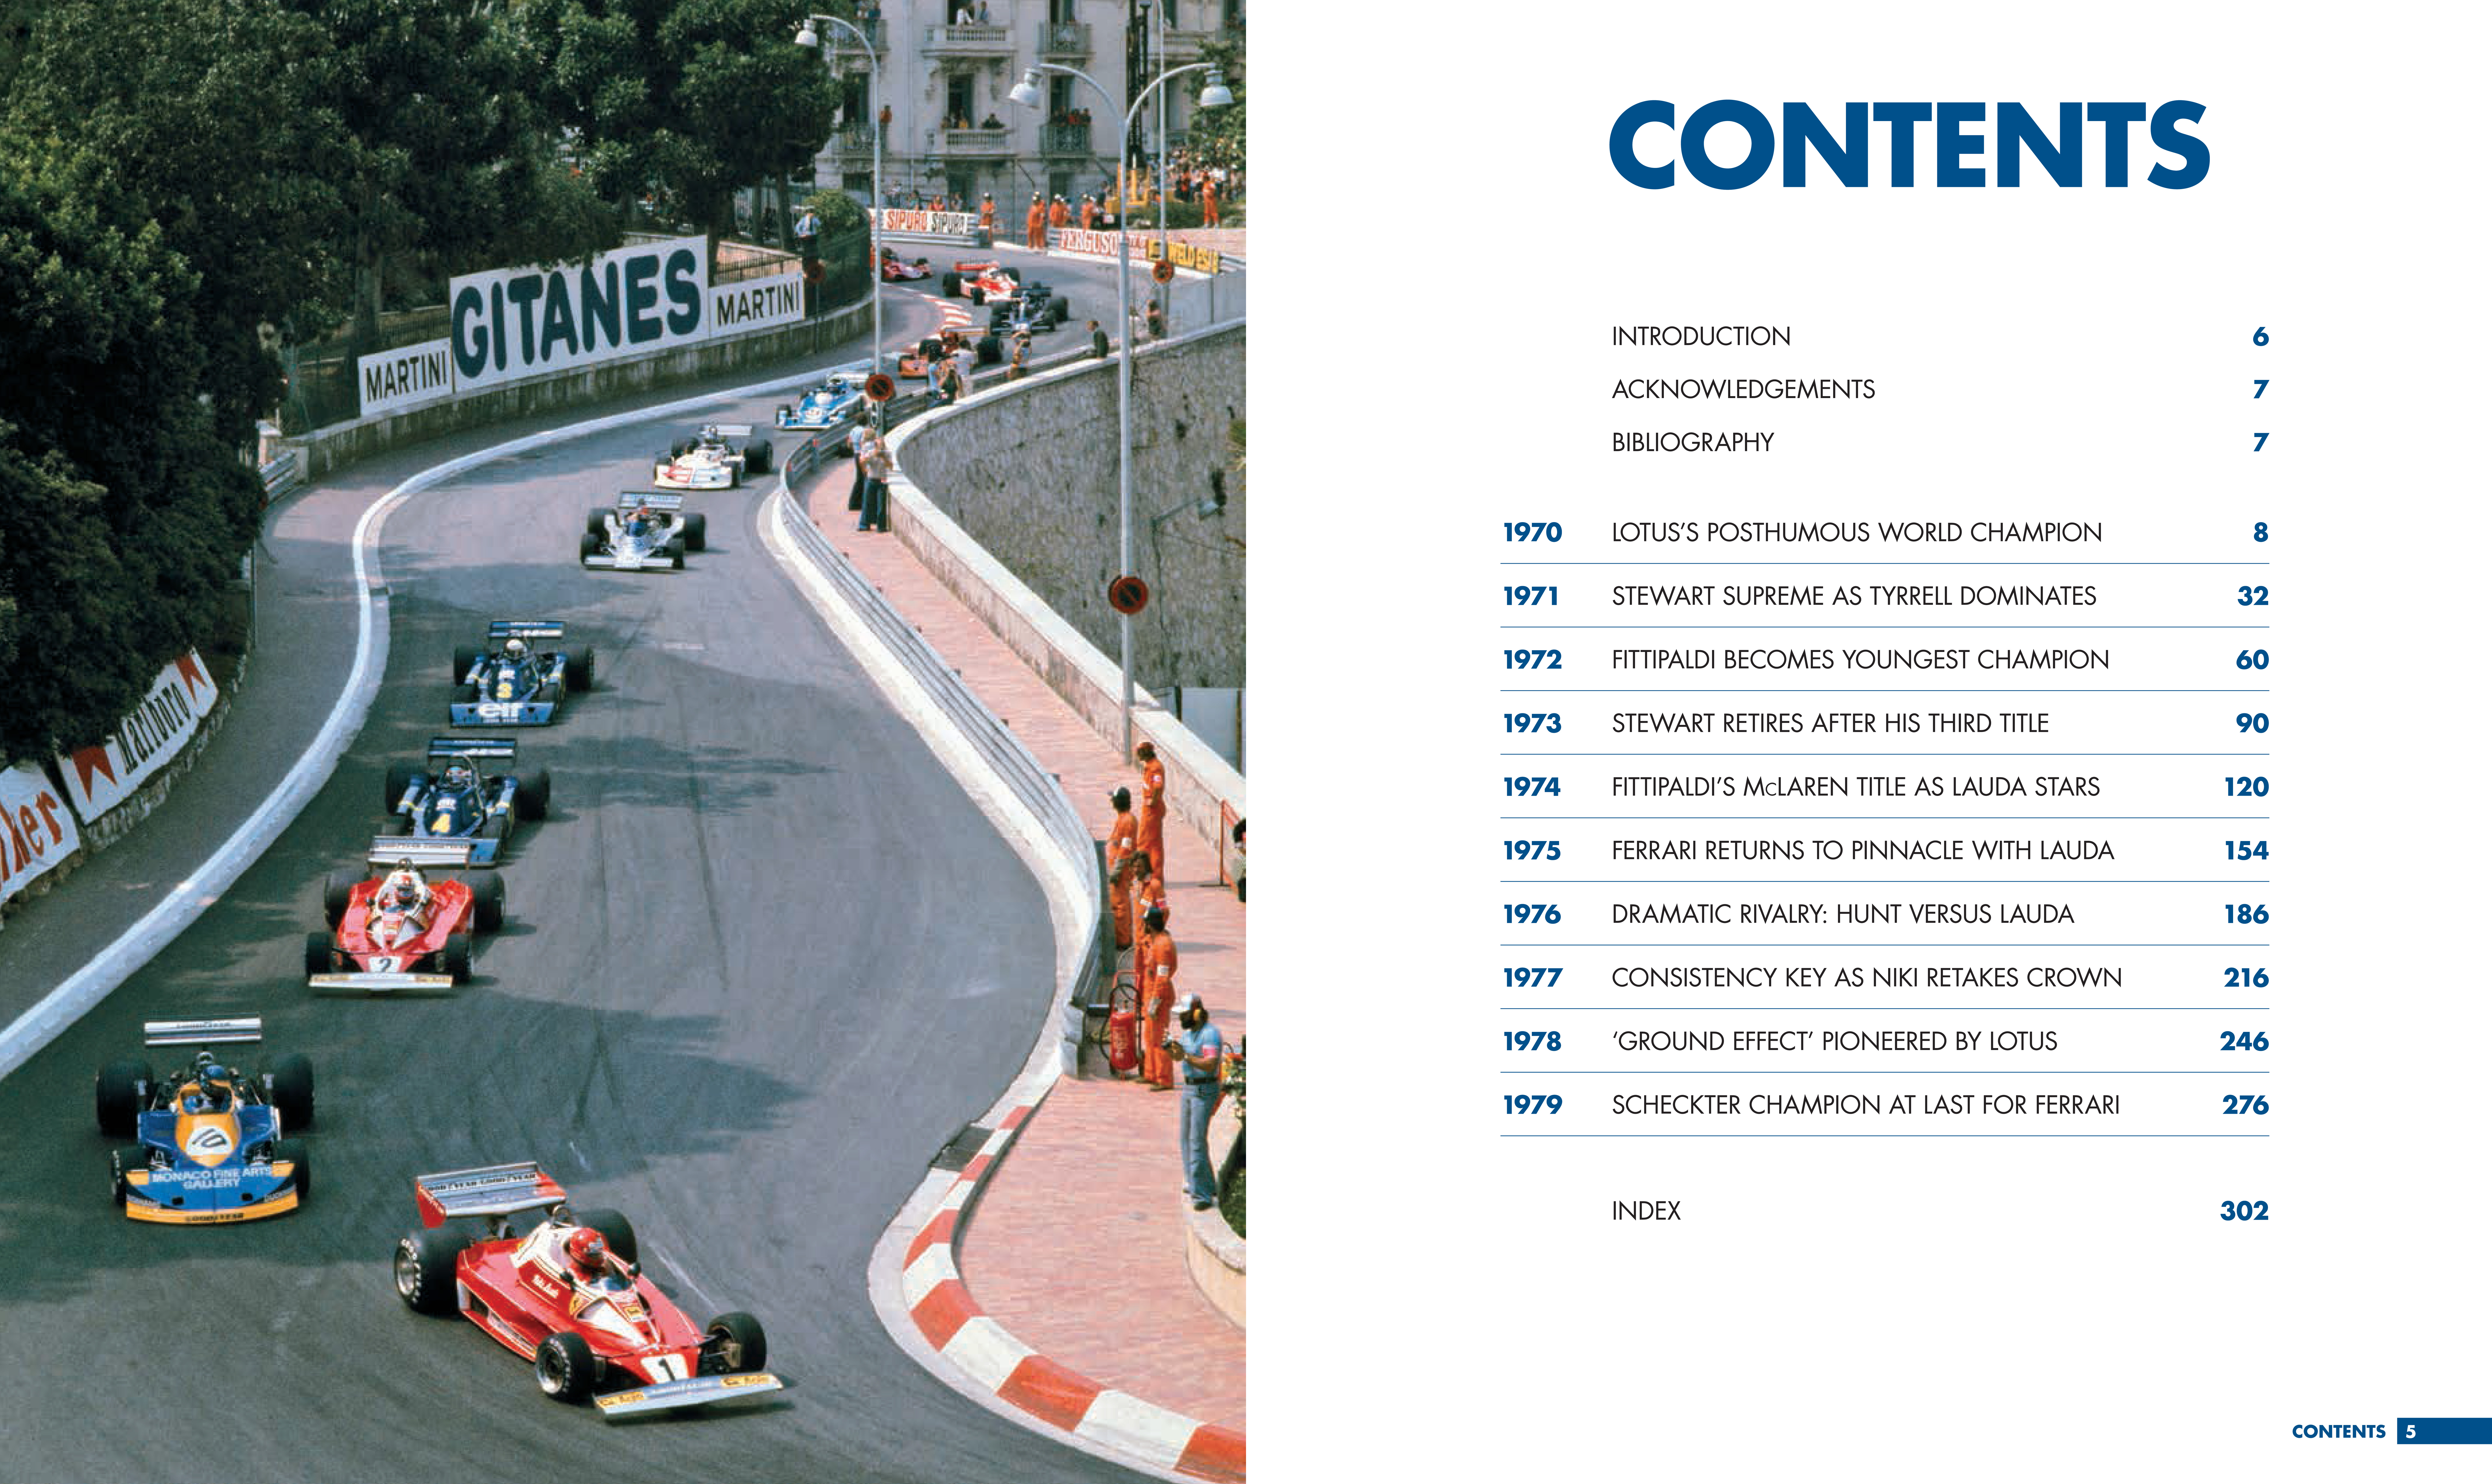 Formula 1: Car by Car 1960-69